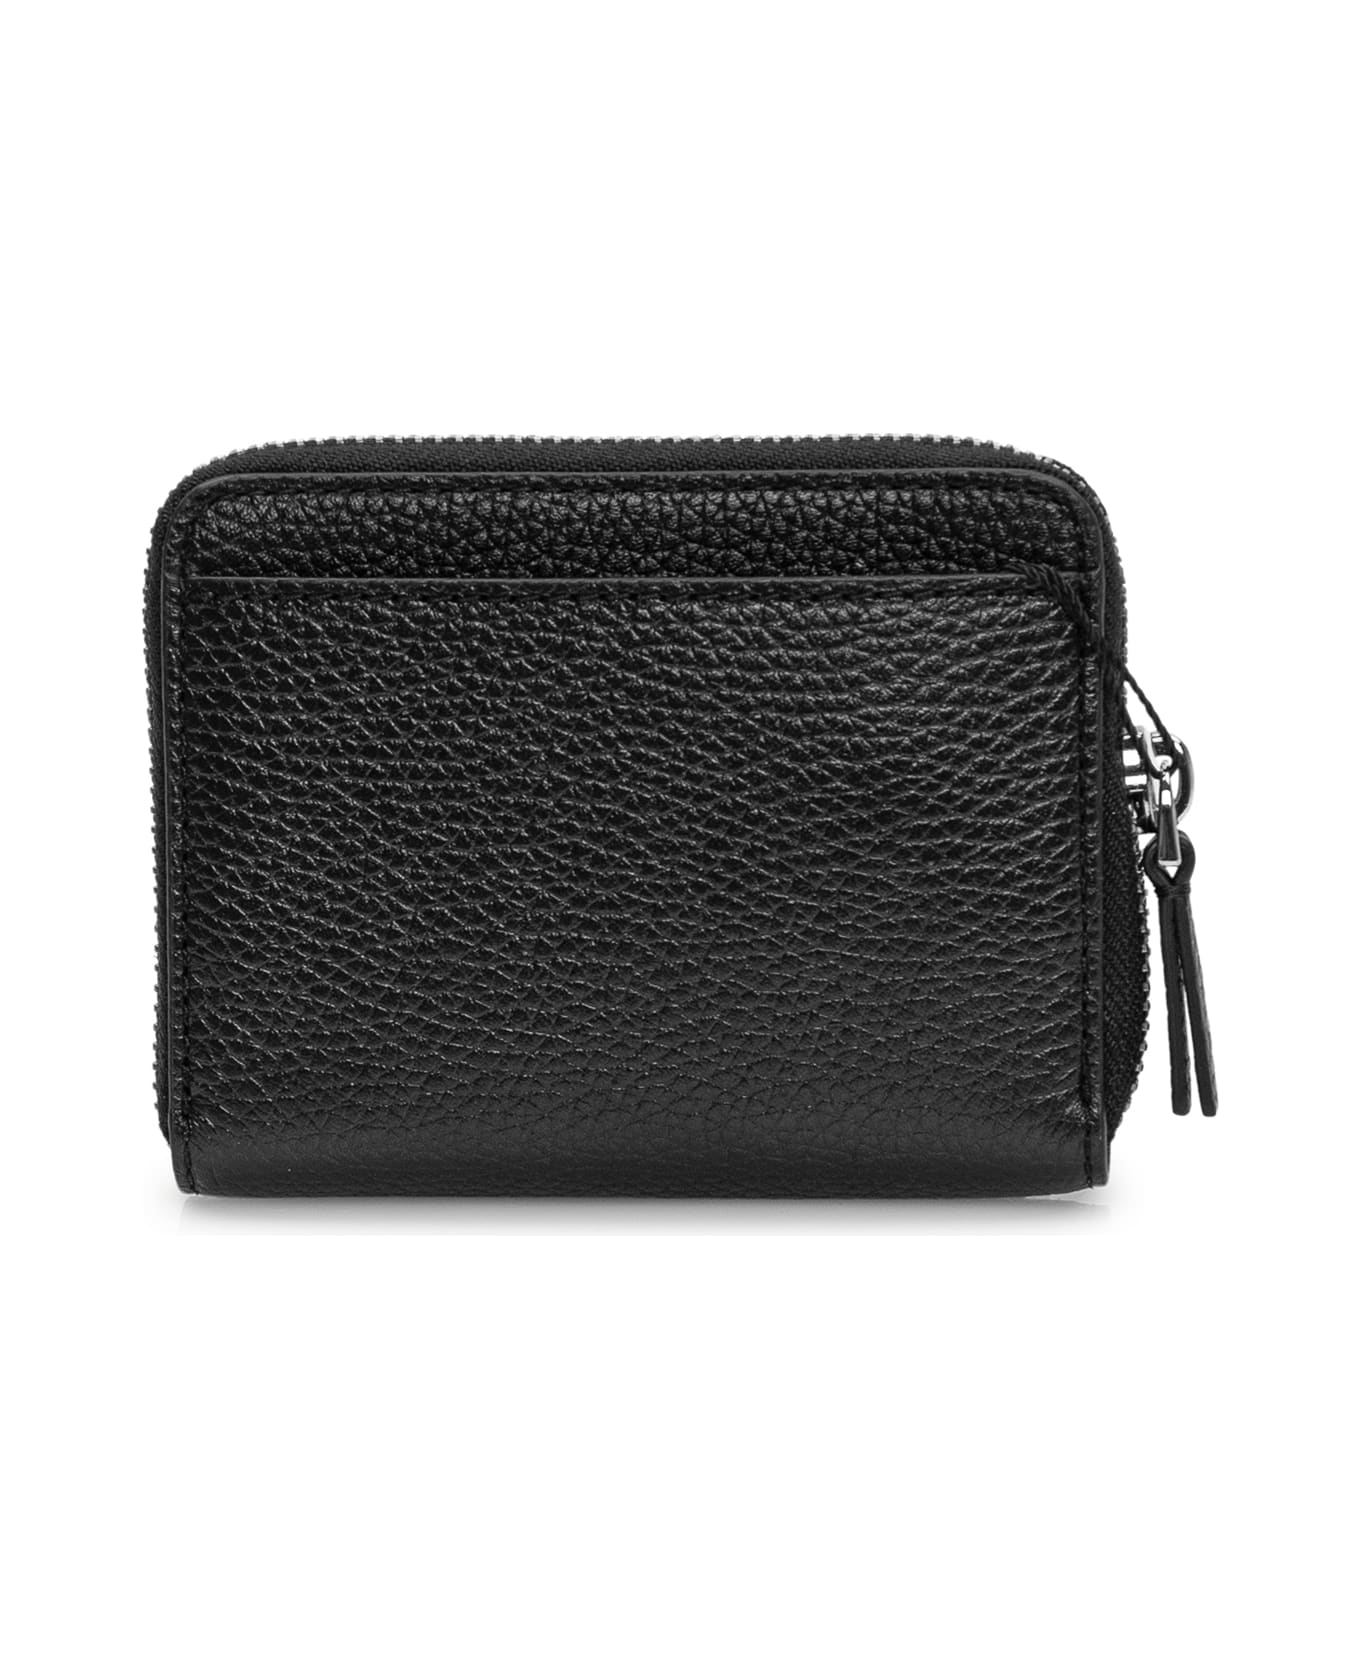 Marc Jacobs Zip Around Wallet - BLACK 財布